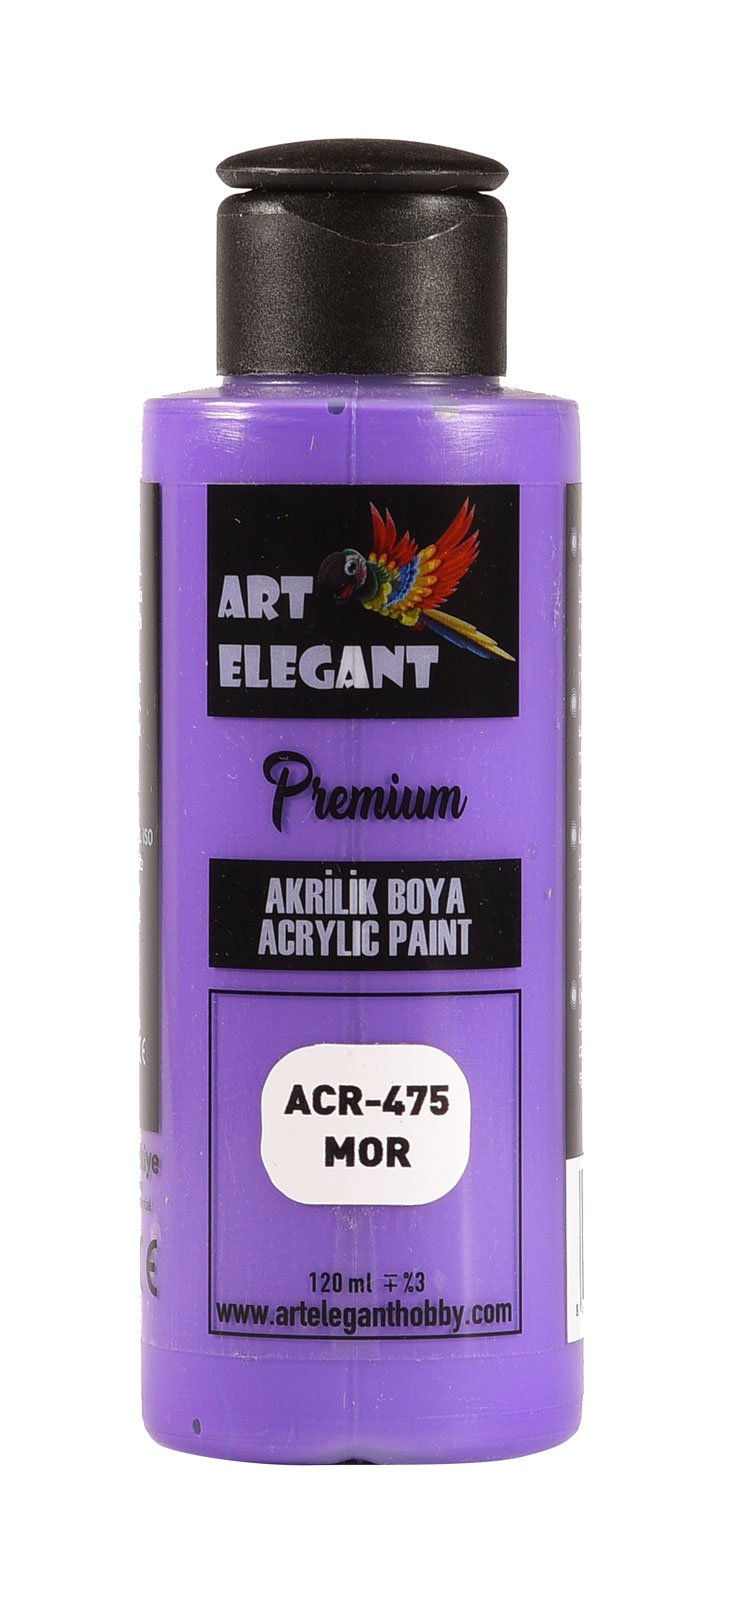 Art Elegant Akrilik Boya 120ml Acr-475 Mor